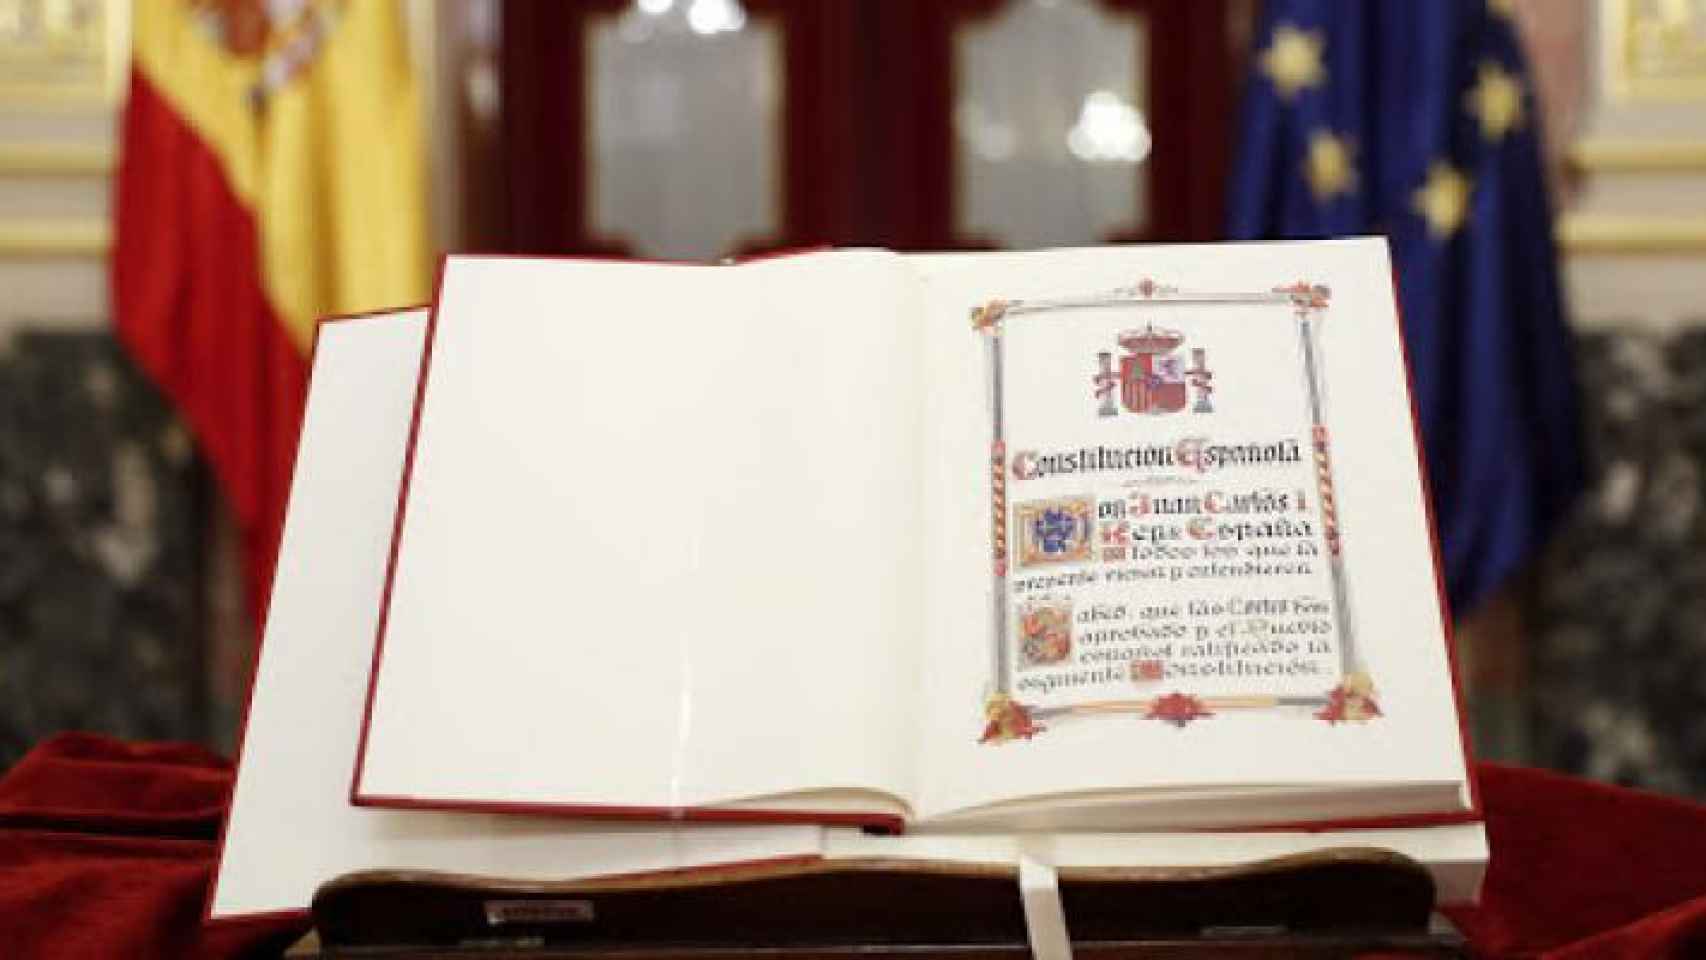 La Constitución de 1978, abierta en el atril del Congreso.